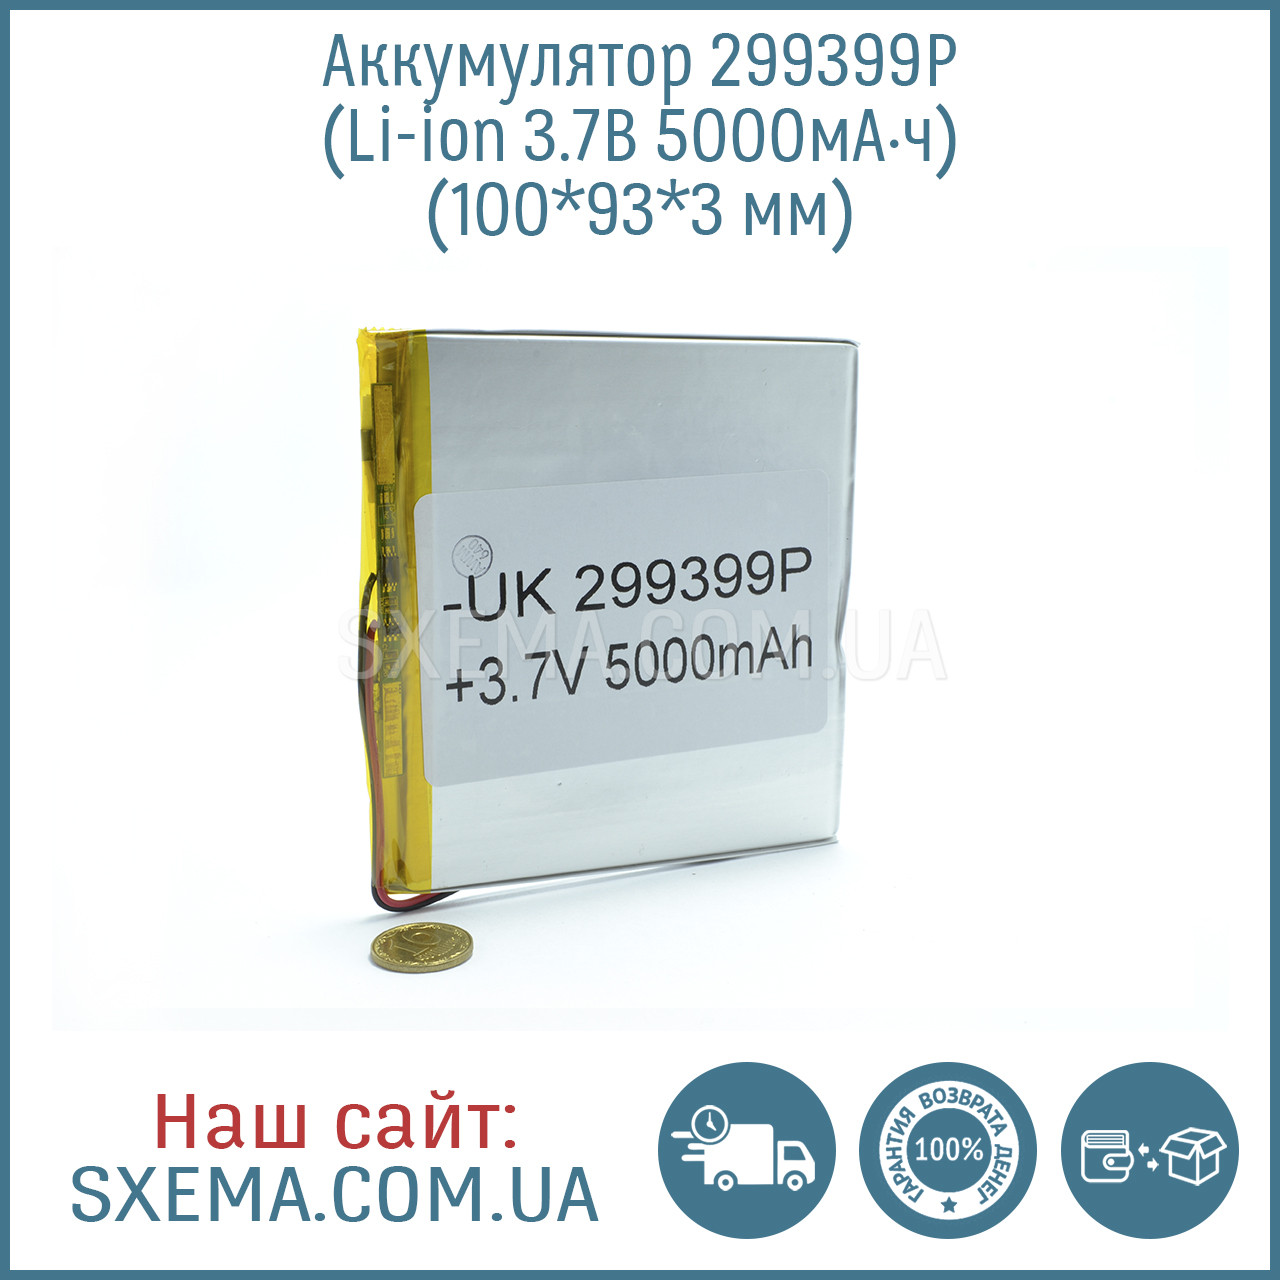 Акумулятор літієво-полімерний універсальний 299399 (Li-Pol 3.7 В 5000 мА·год), (100*93*3 мм)